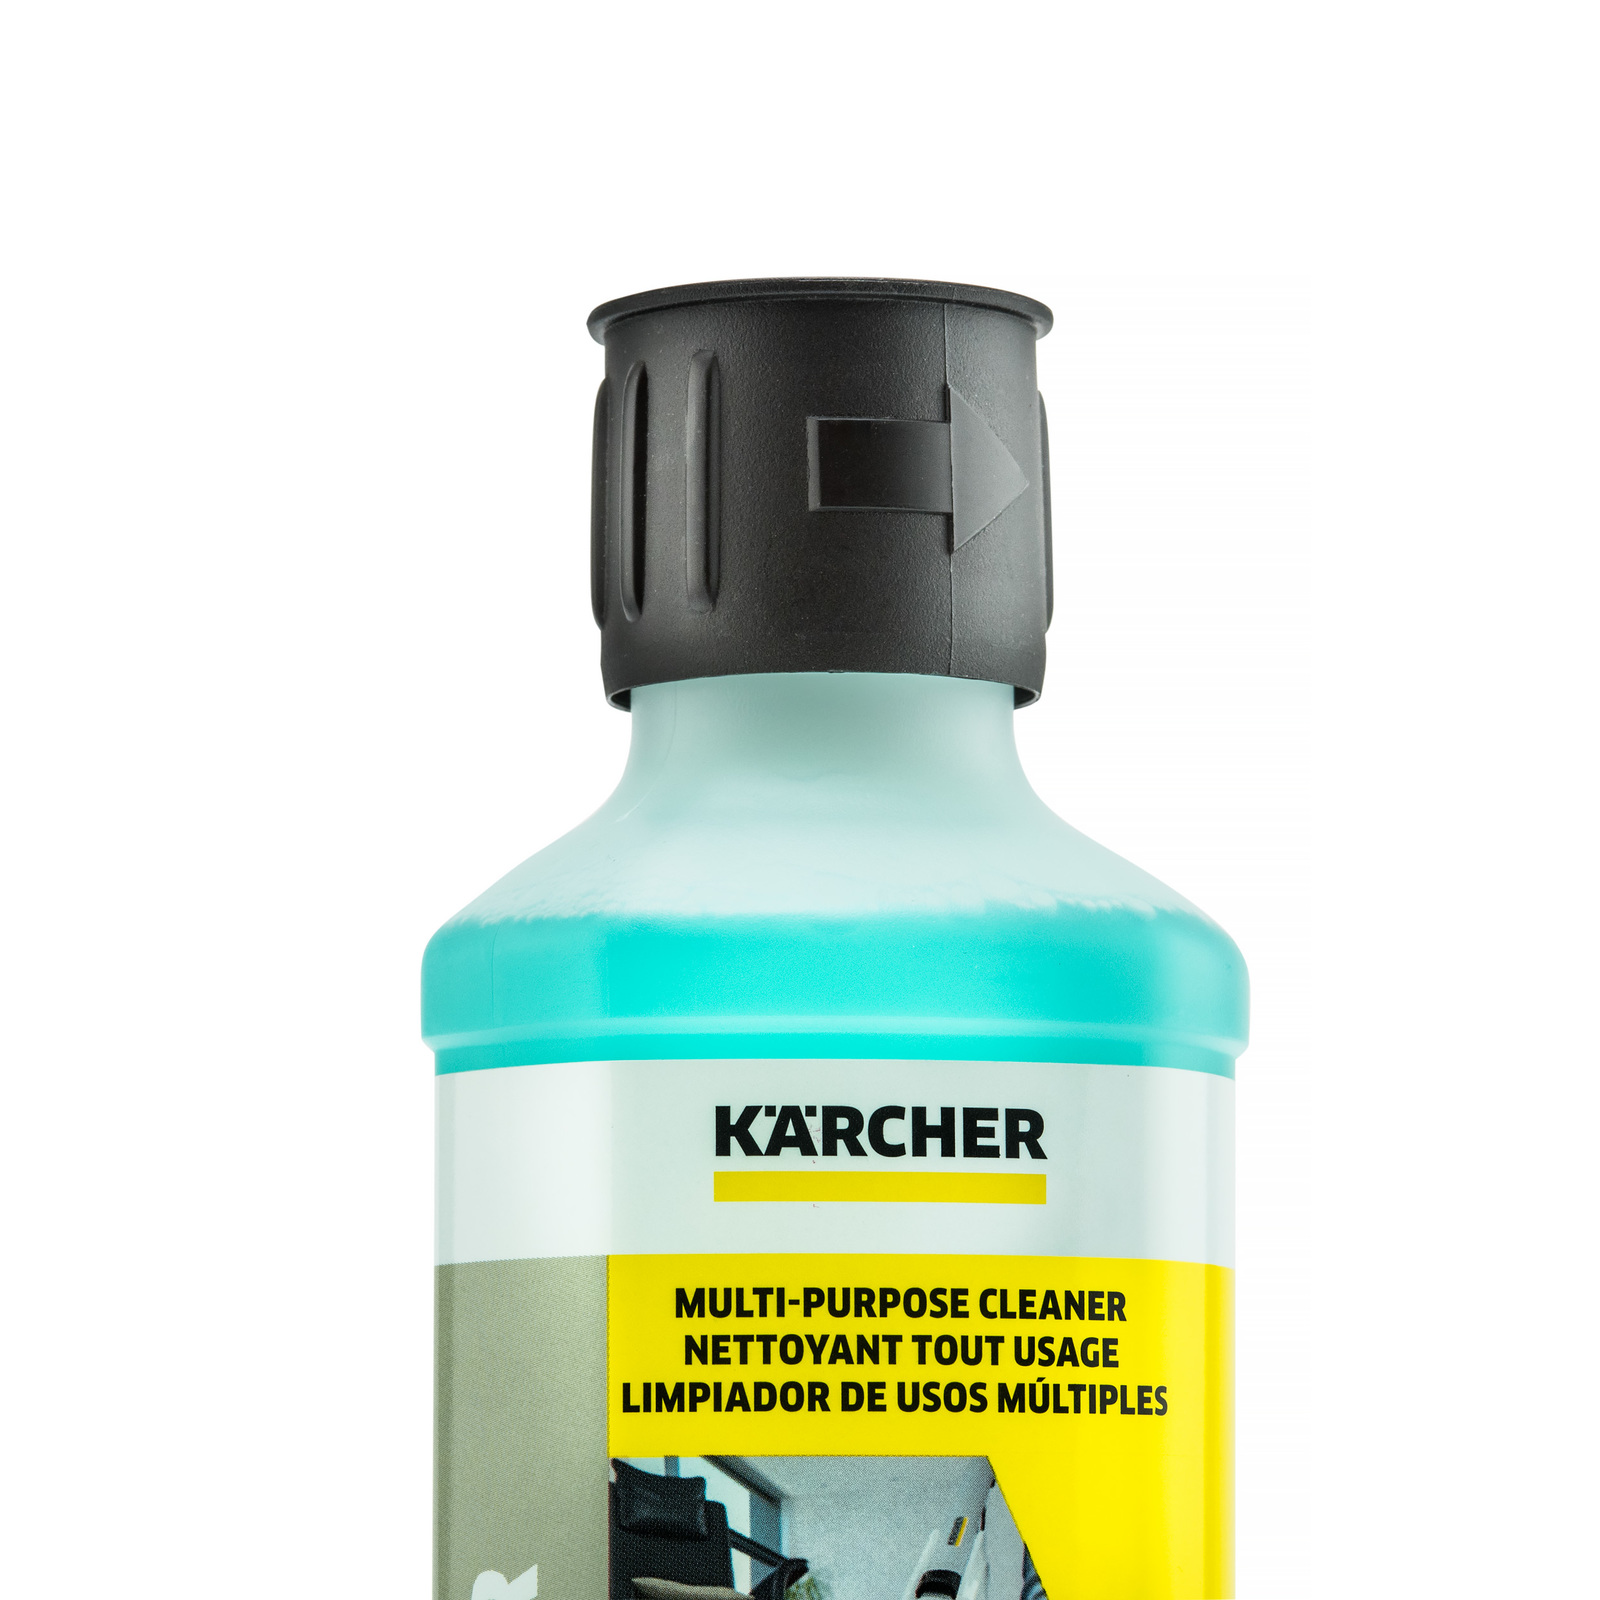 Karcher FC5 Hard Floor Cleaner Review